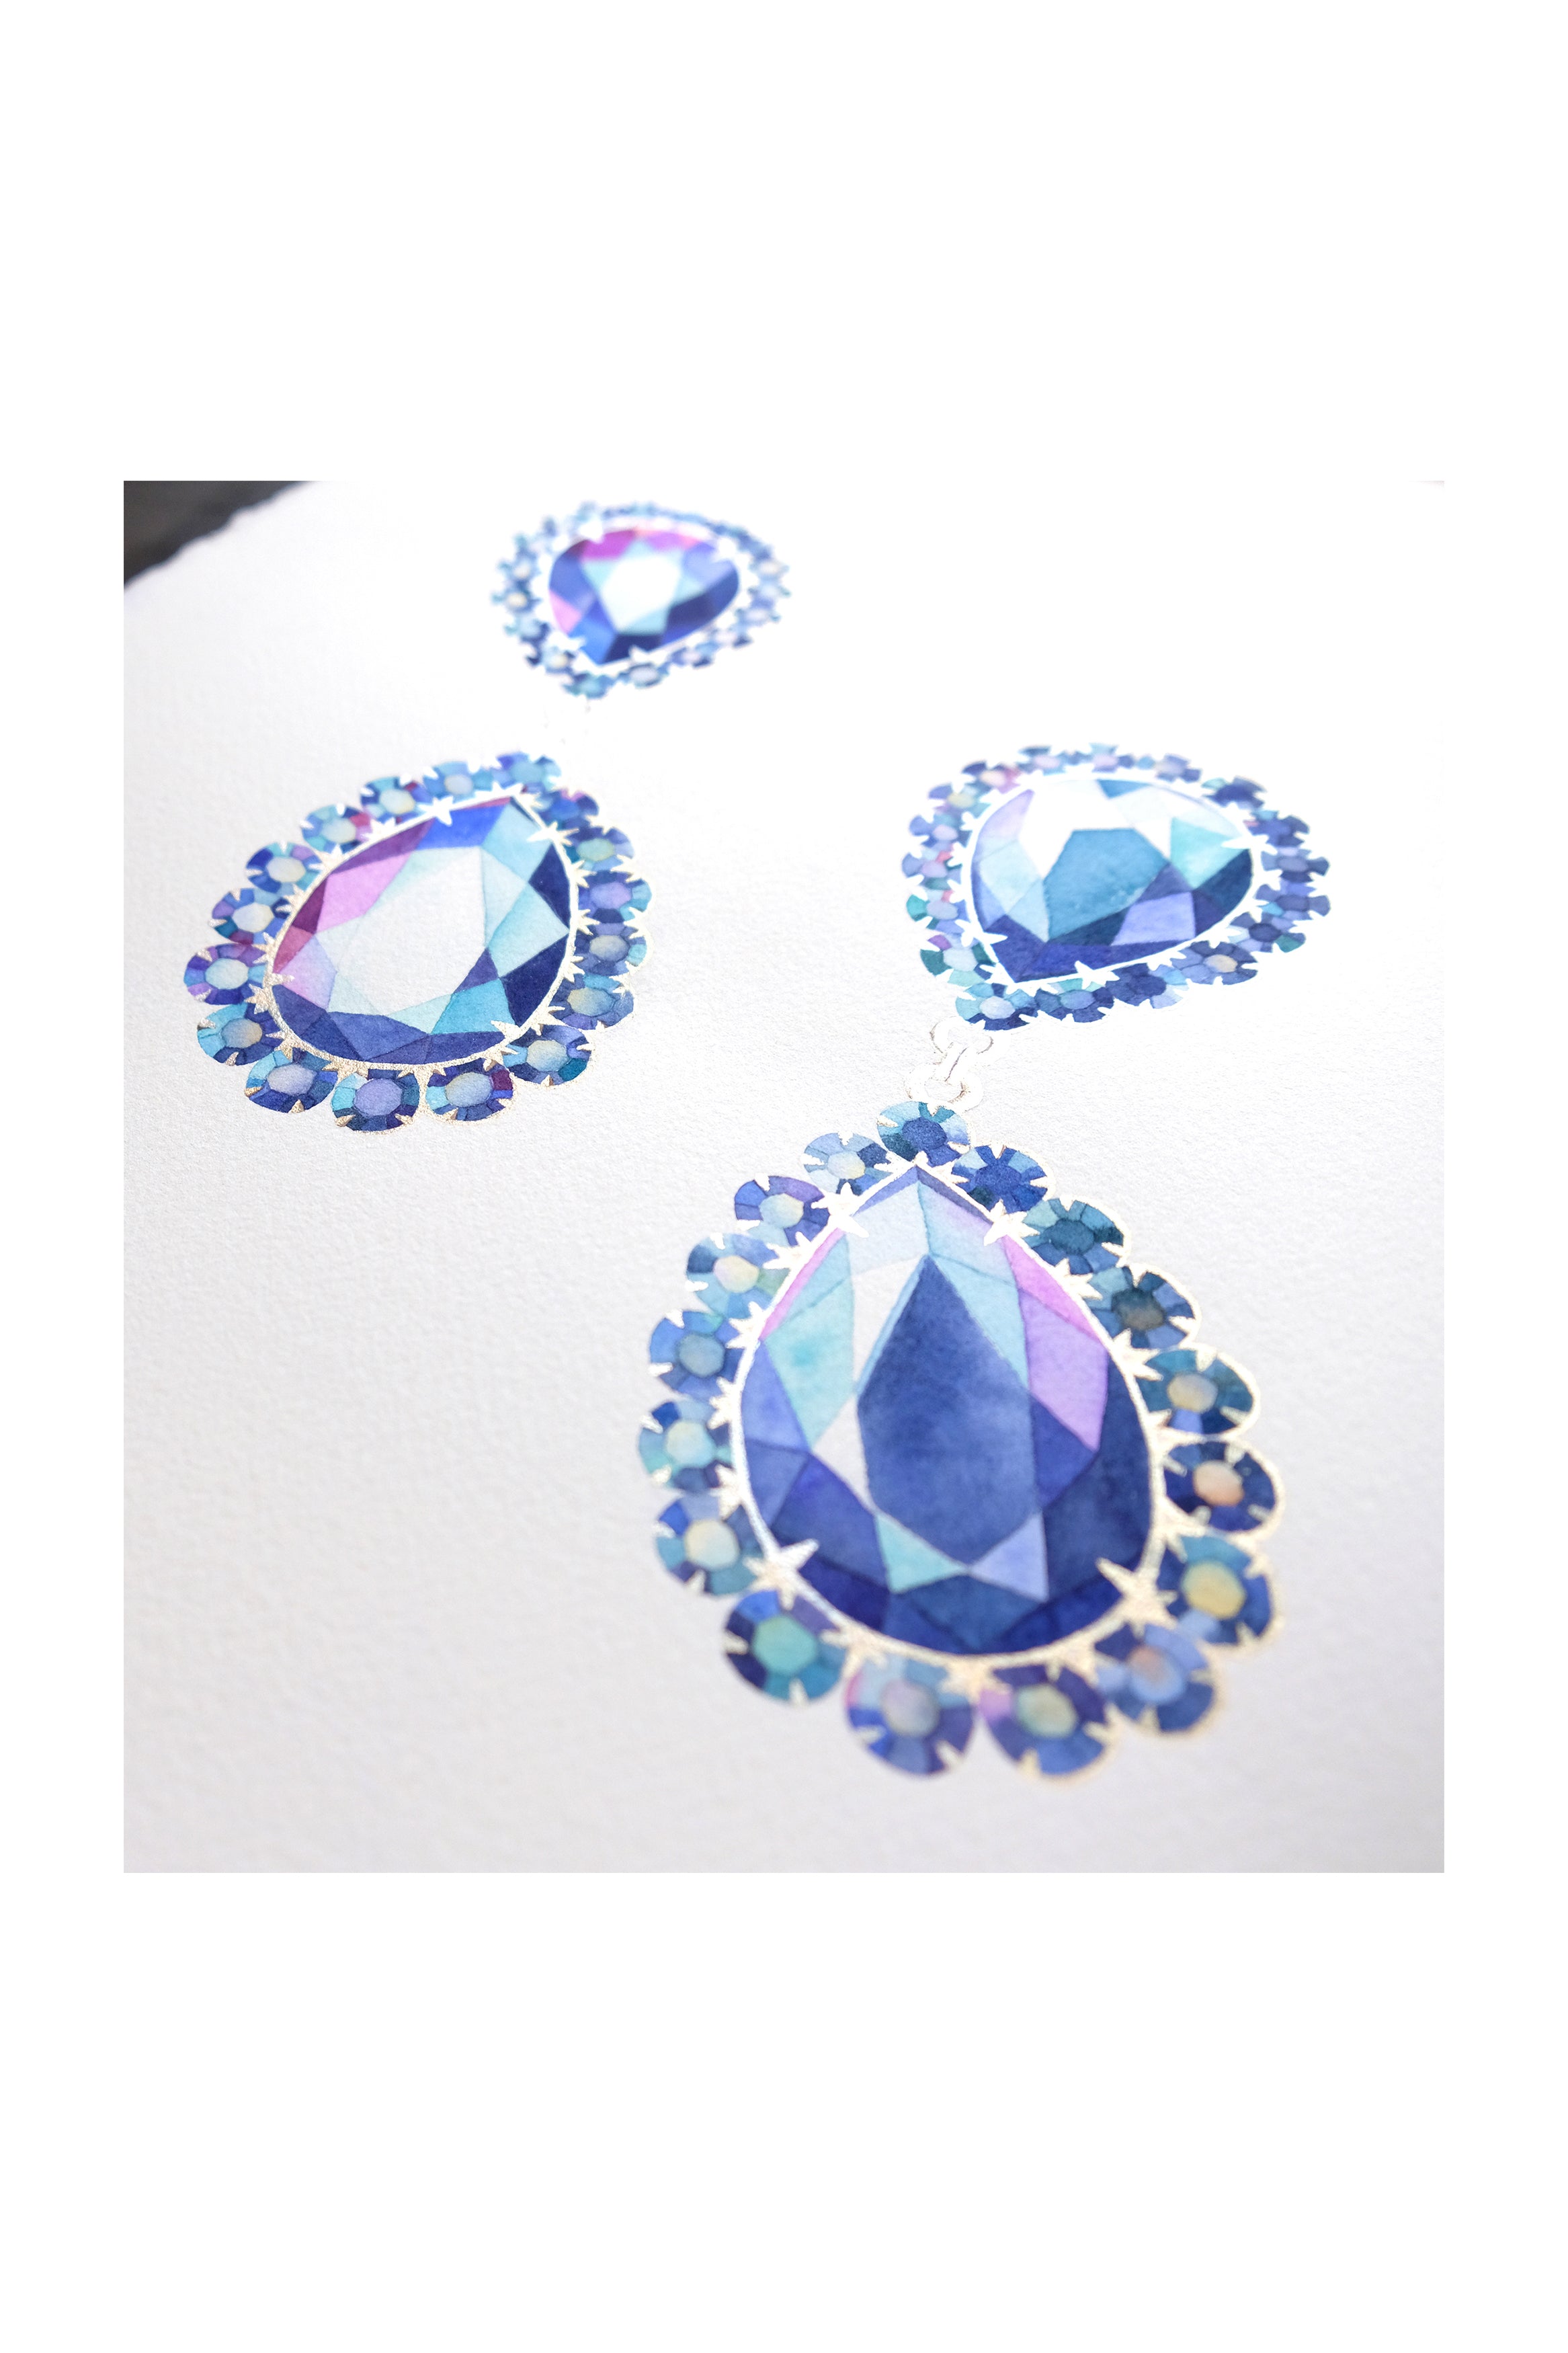 Original Painting - Watercolor Gemstone Earrings 11x15